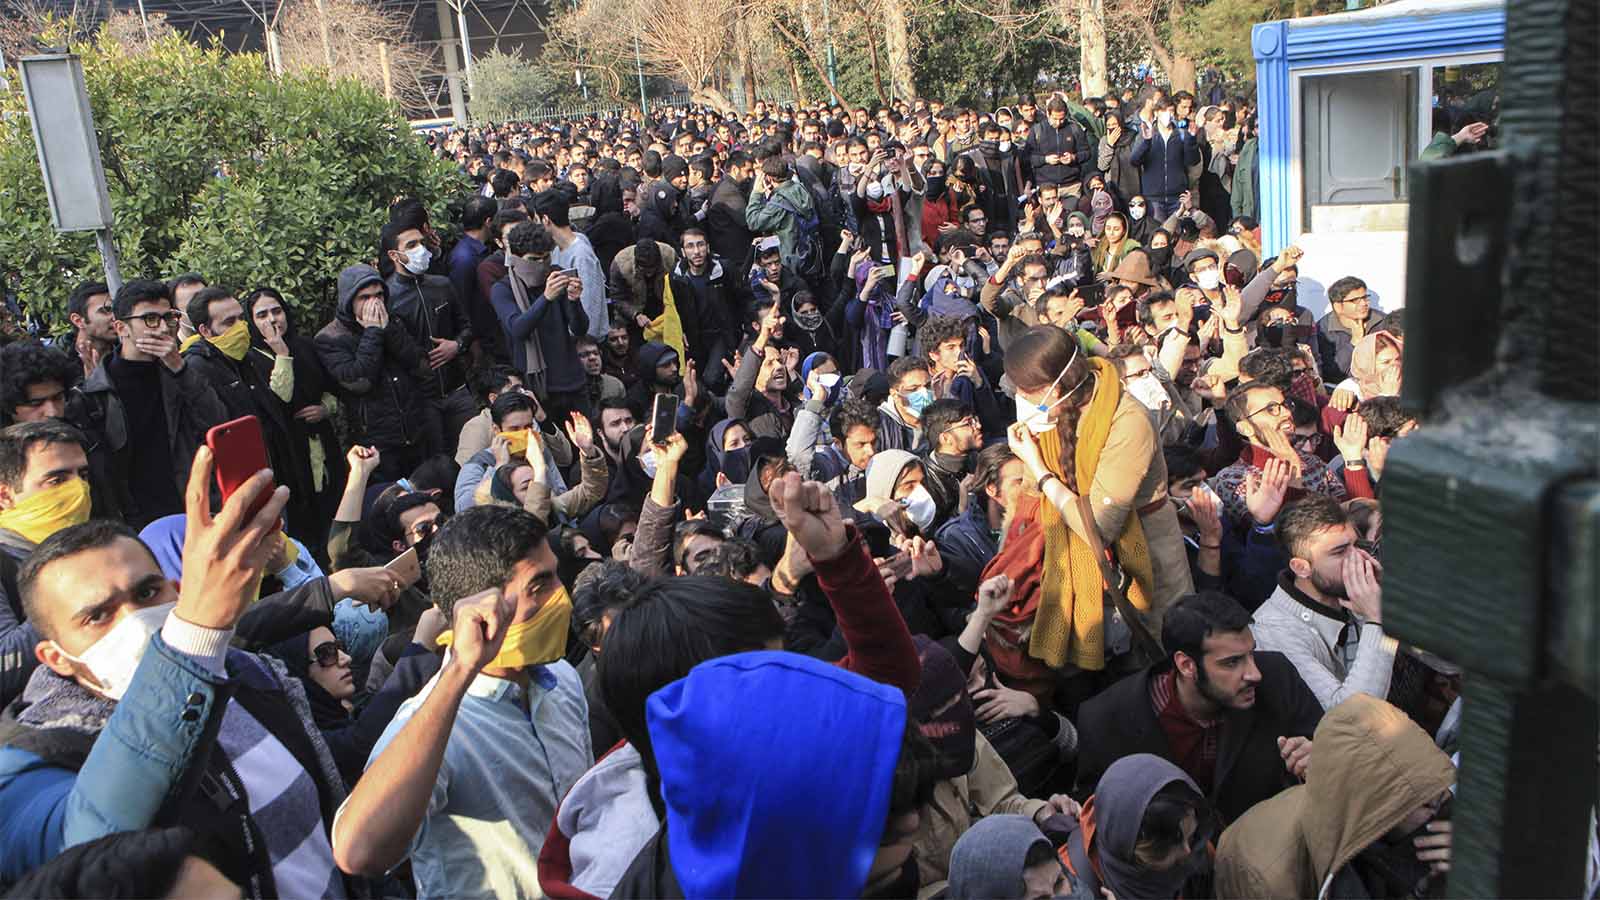 תמונה שצולמה על ידי אחד המפגינים והוברחה אל מחוץ לאיראן. הפגנה של סטודנטים באוניברסיטת טהארן ביום שבת 30.12.17. (AP Photo, File)